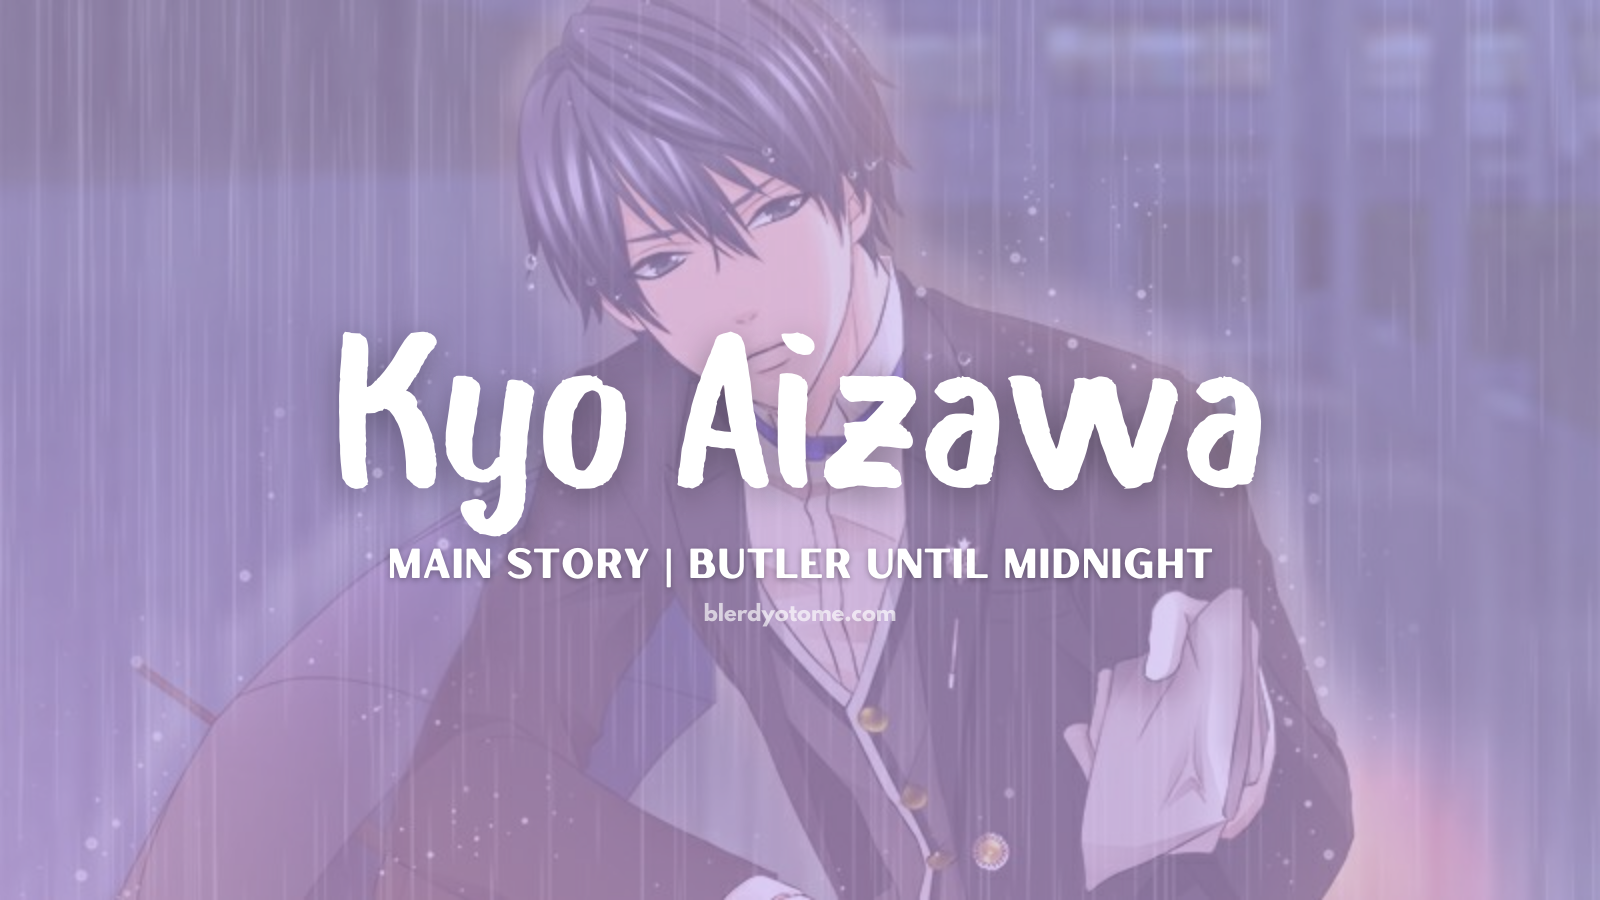 Butler Until Midnight Kyo